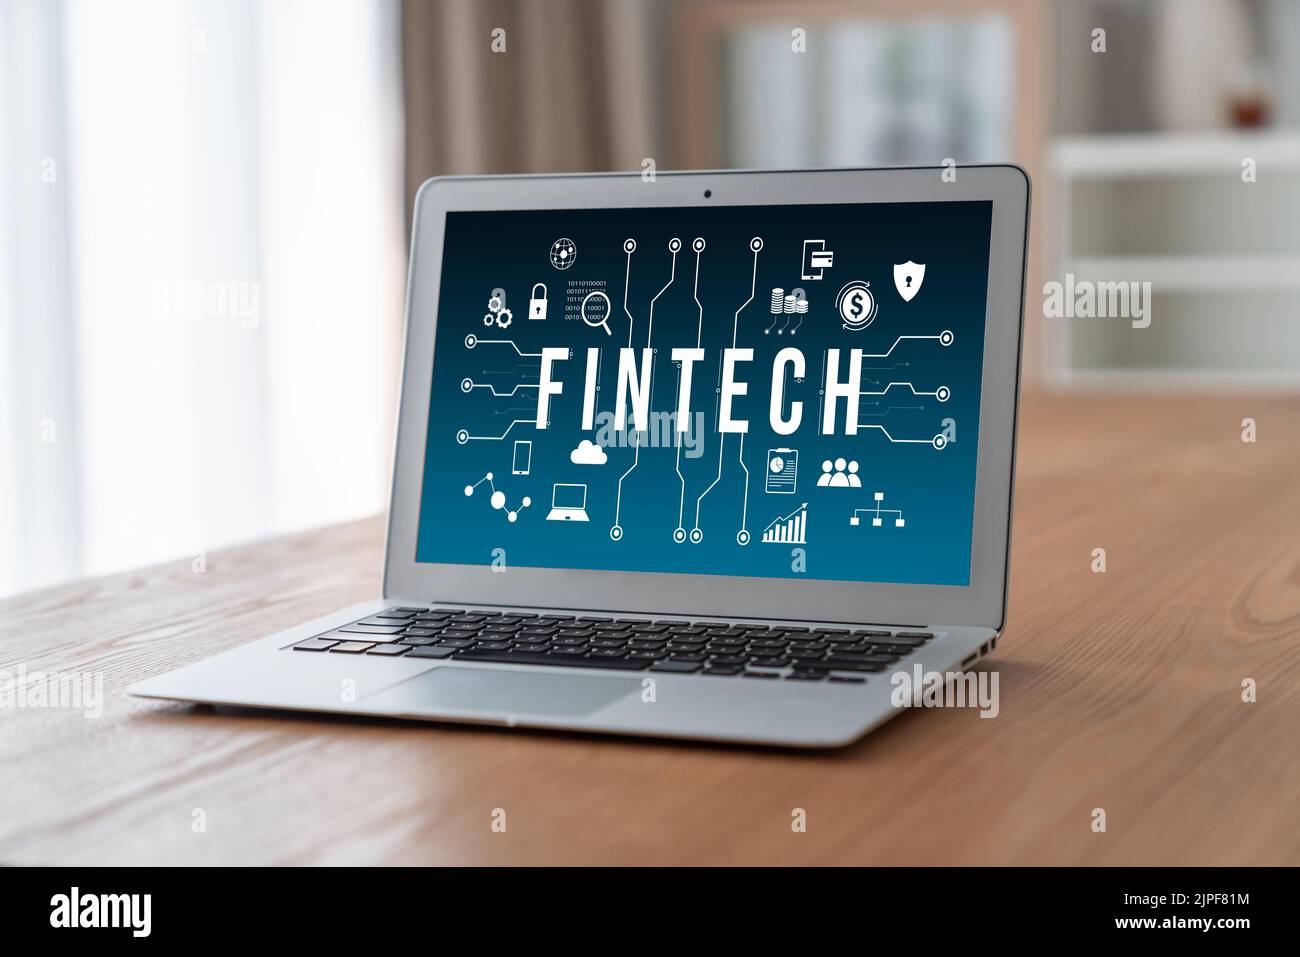 Logiciel de technologie financière Fintech pour les affaires modish pour analyser la stratégie de marketing Banque D'Images